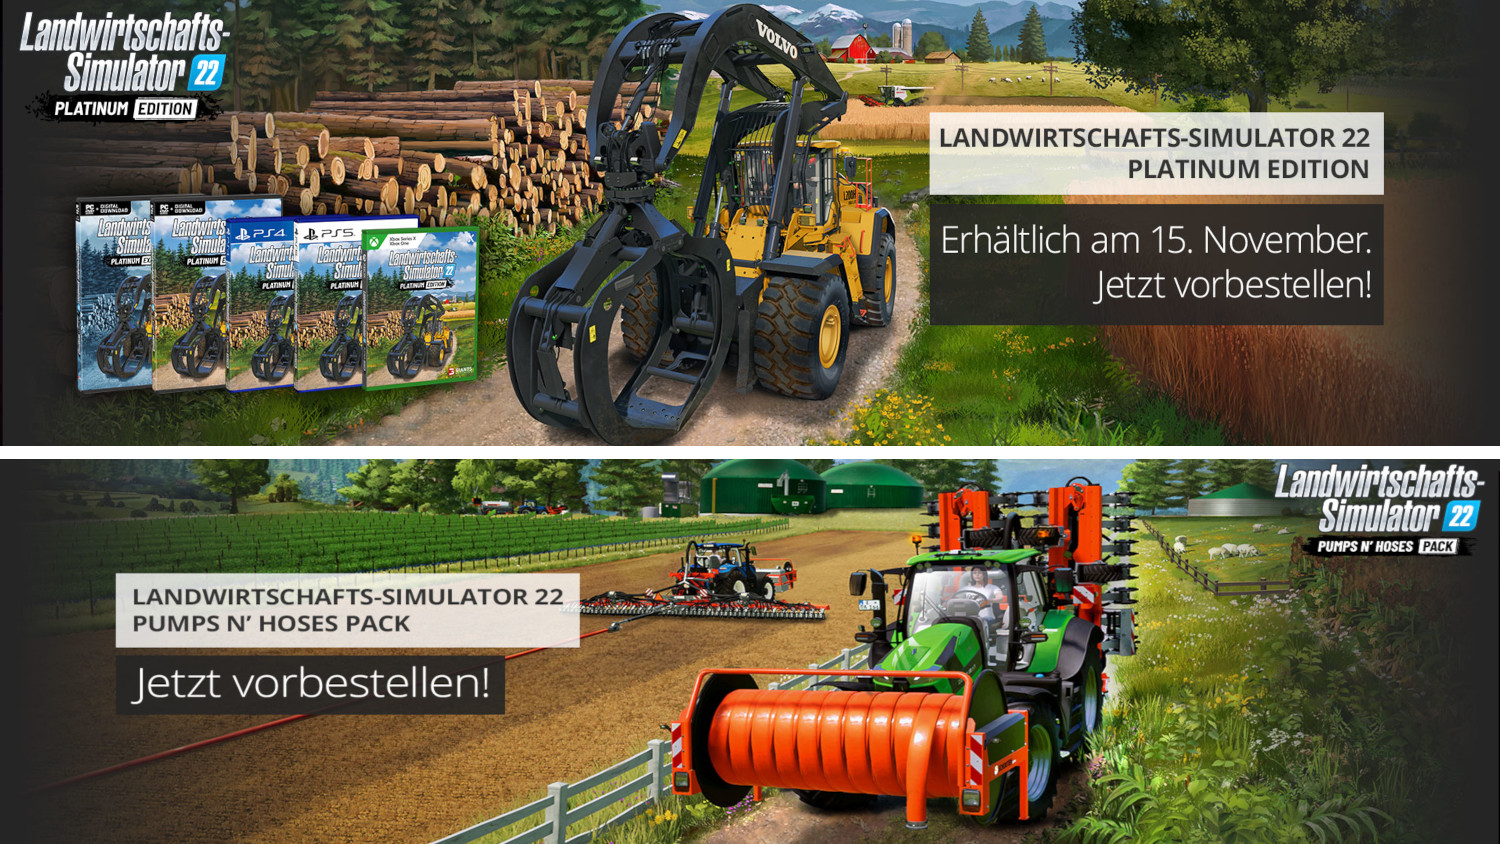 Gamescom 2022: Landwirtschafts-Simulator 22 Pumps N' Hoses Pack